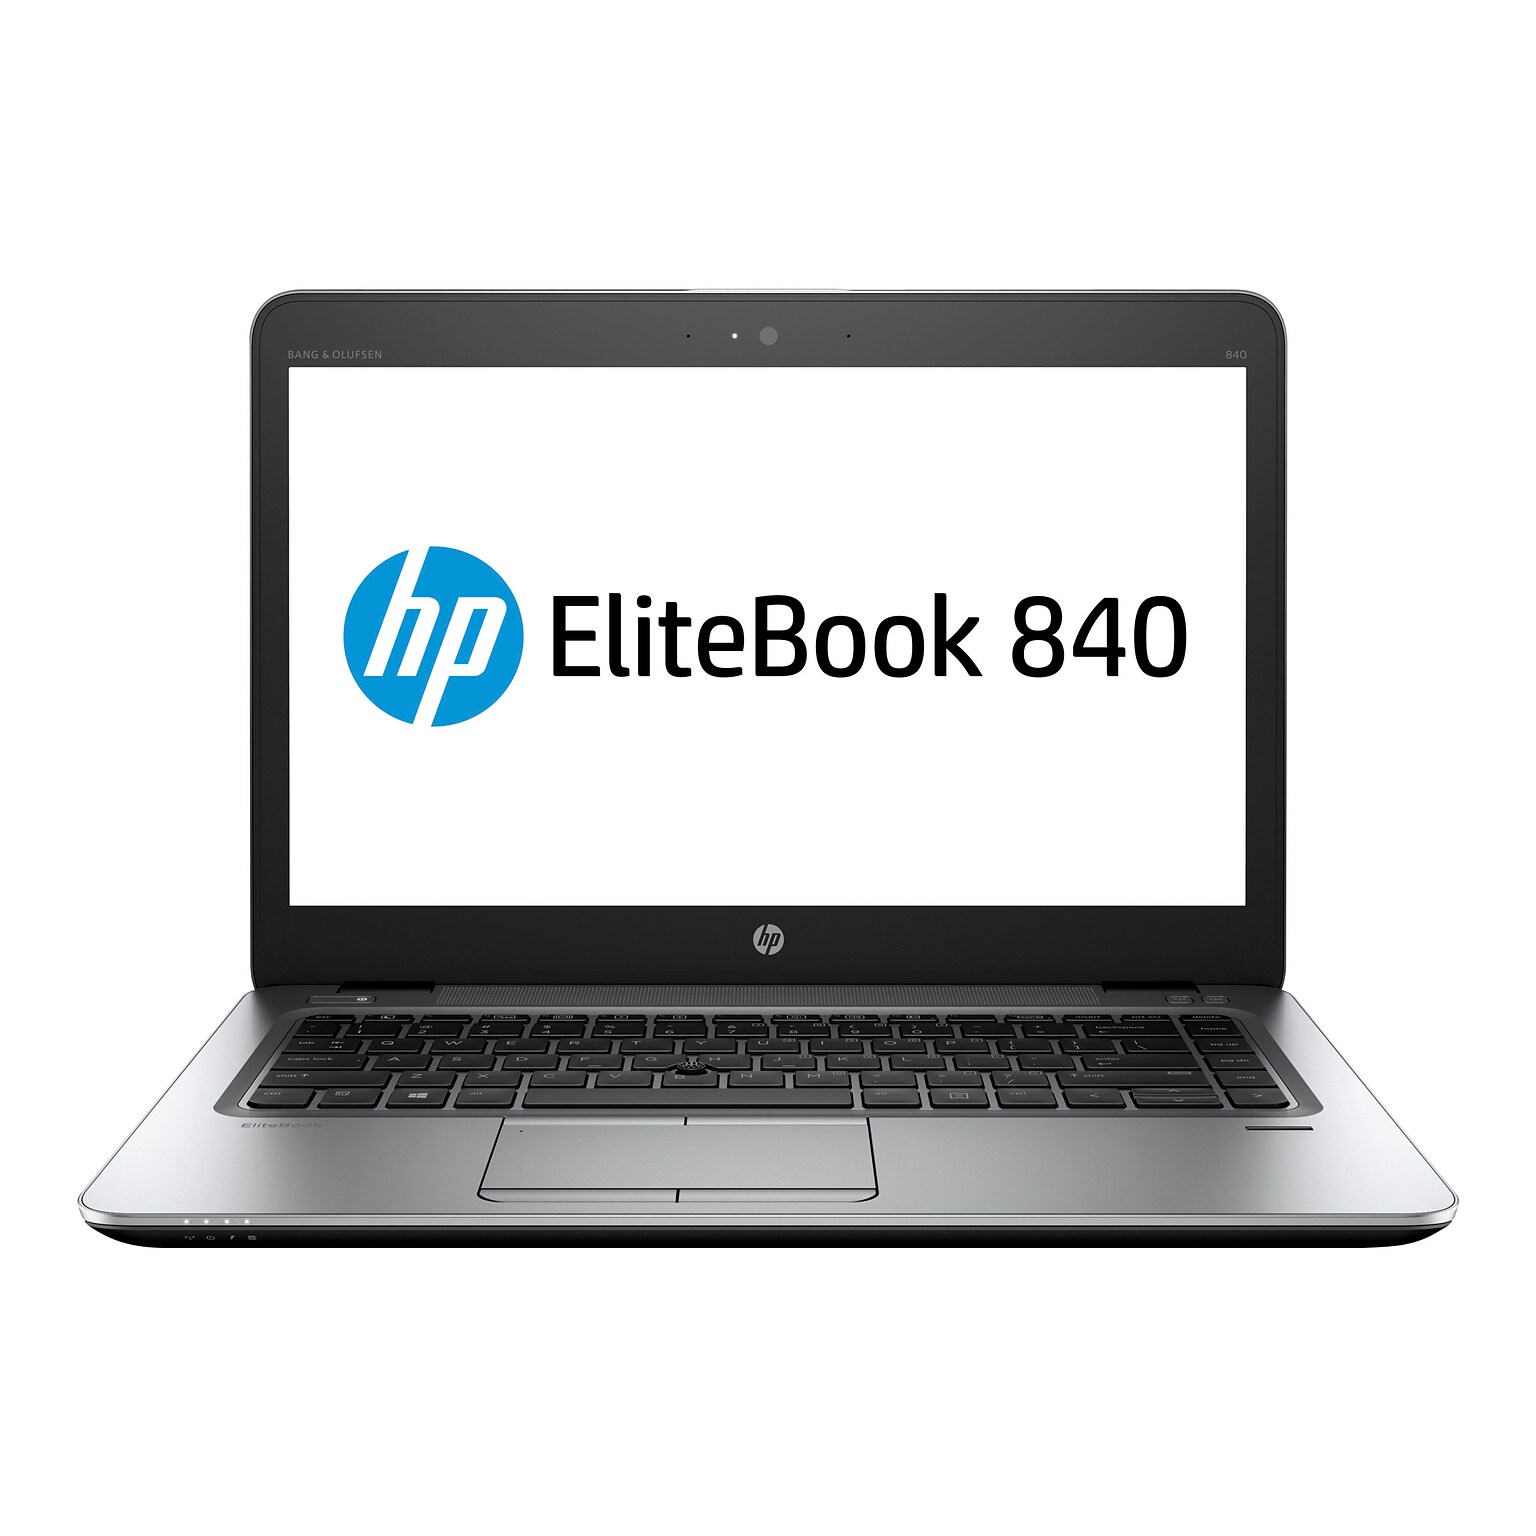 HP EliteBook 840 G3 14 Refurbished Ultrabook, Intel i5, 8GB Memory, 256GB SSD, Windows 7 Pro (T6F46UT)